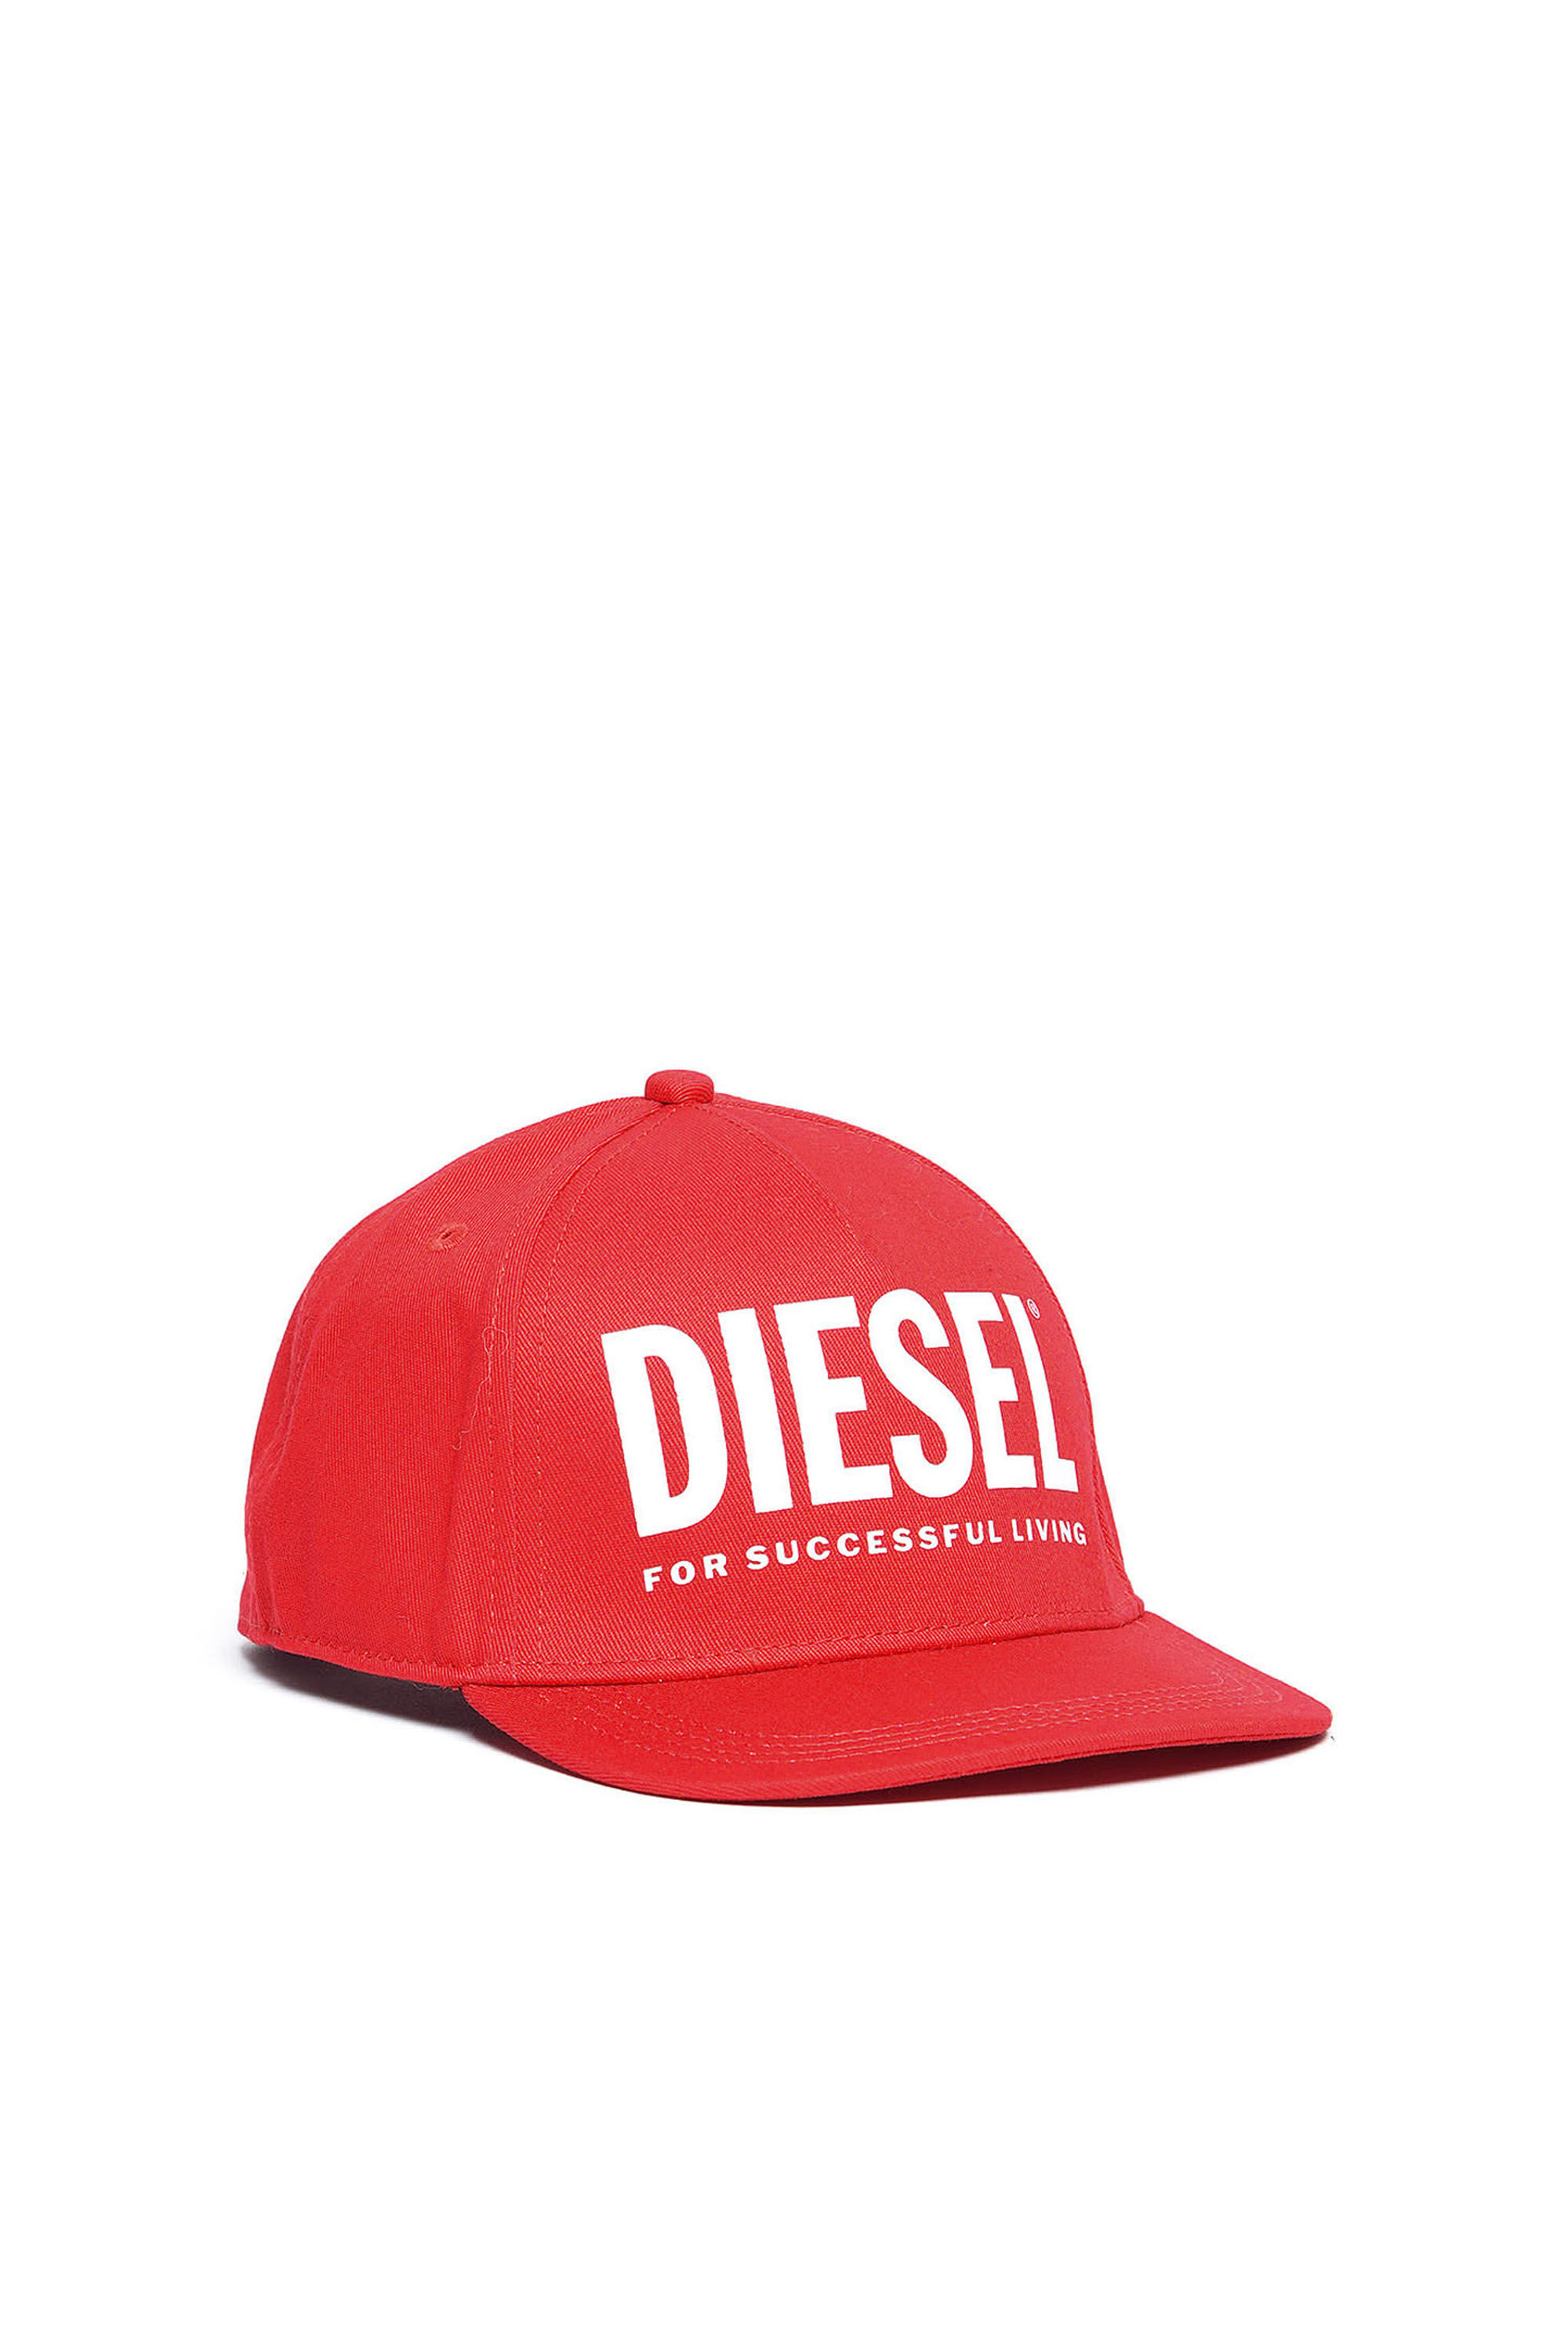 Diesel - FOLLY,  - Image 1